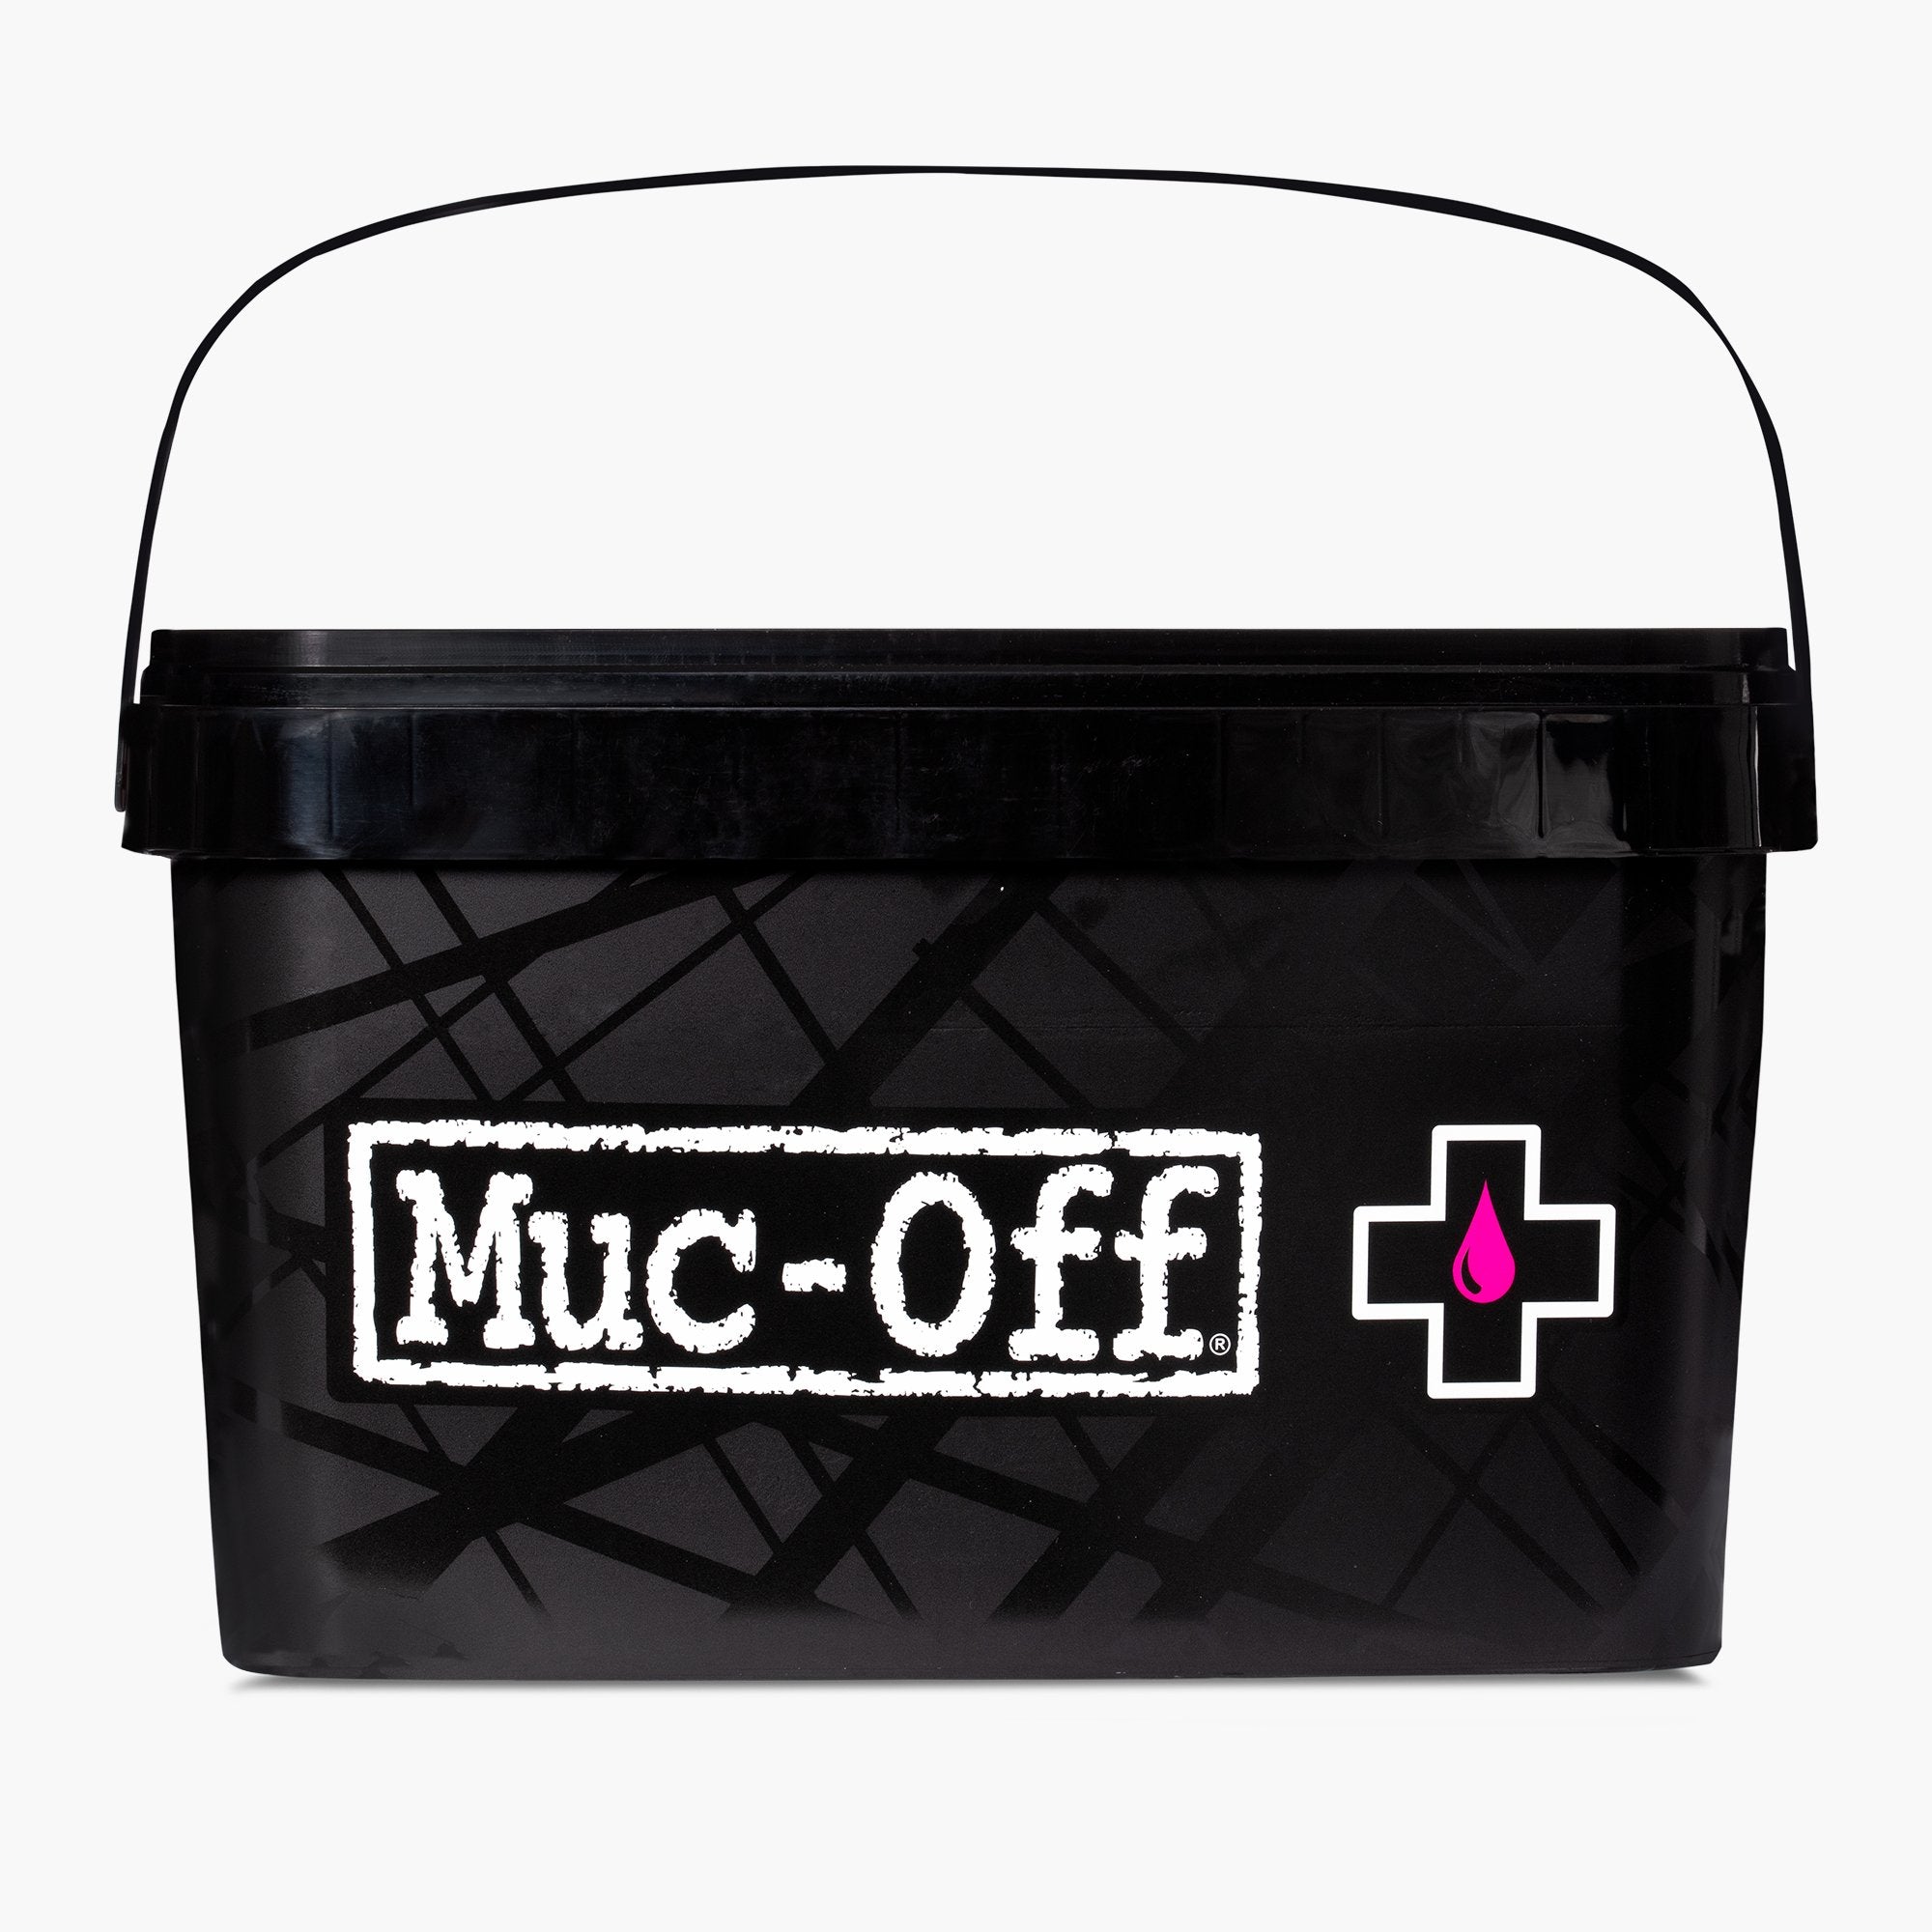 Muc-Off bike Cleaner cleaner 3x1 Liter